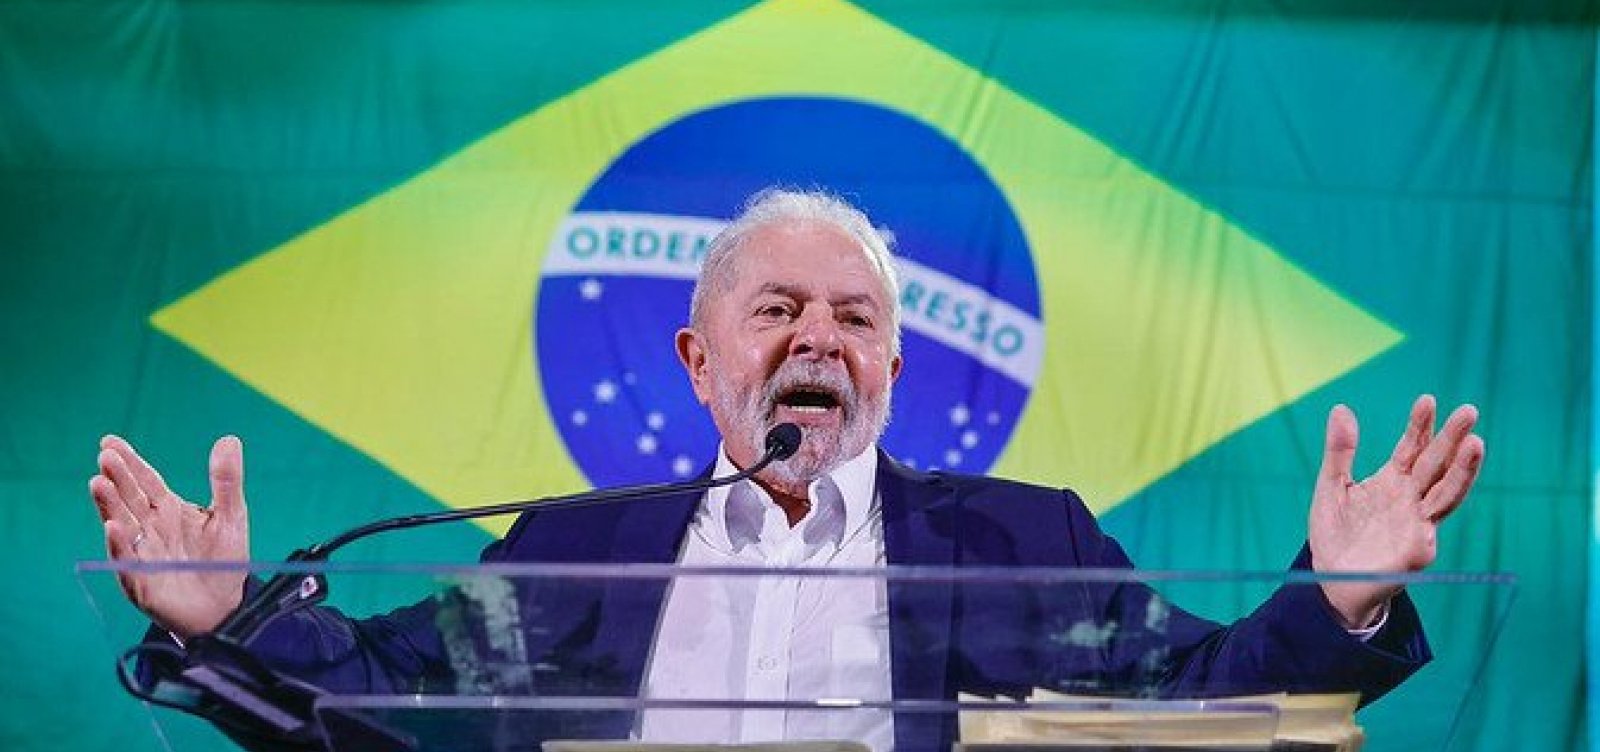 Grandeza de Dilma não cabe em um ministério, diz Lula no lançamento de sua chapa